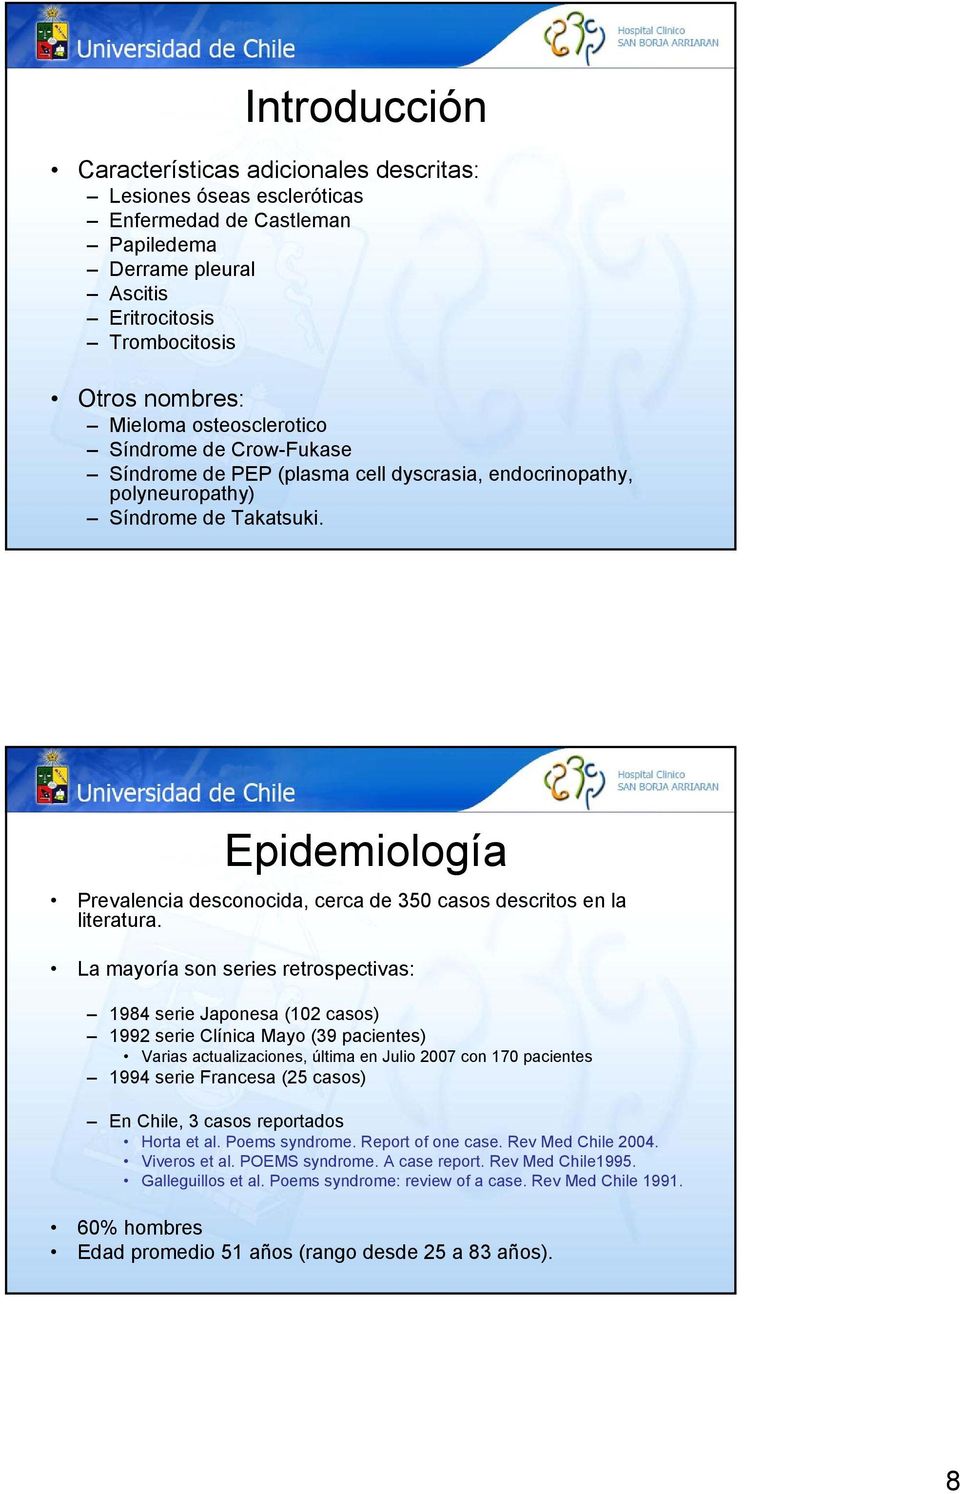 Epidemiología Prevalencia desconocida, cerca de 350 casos descritos en la literatura.